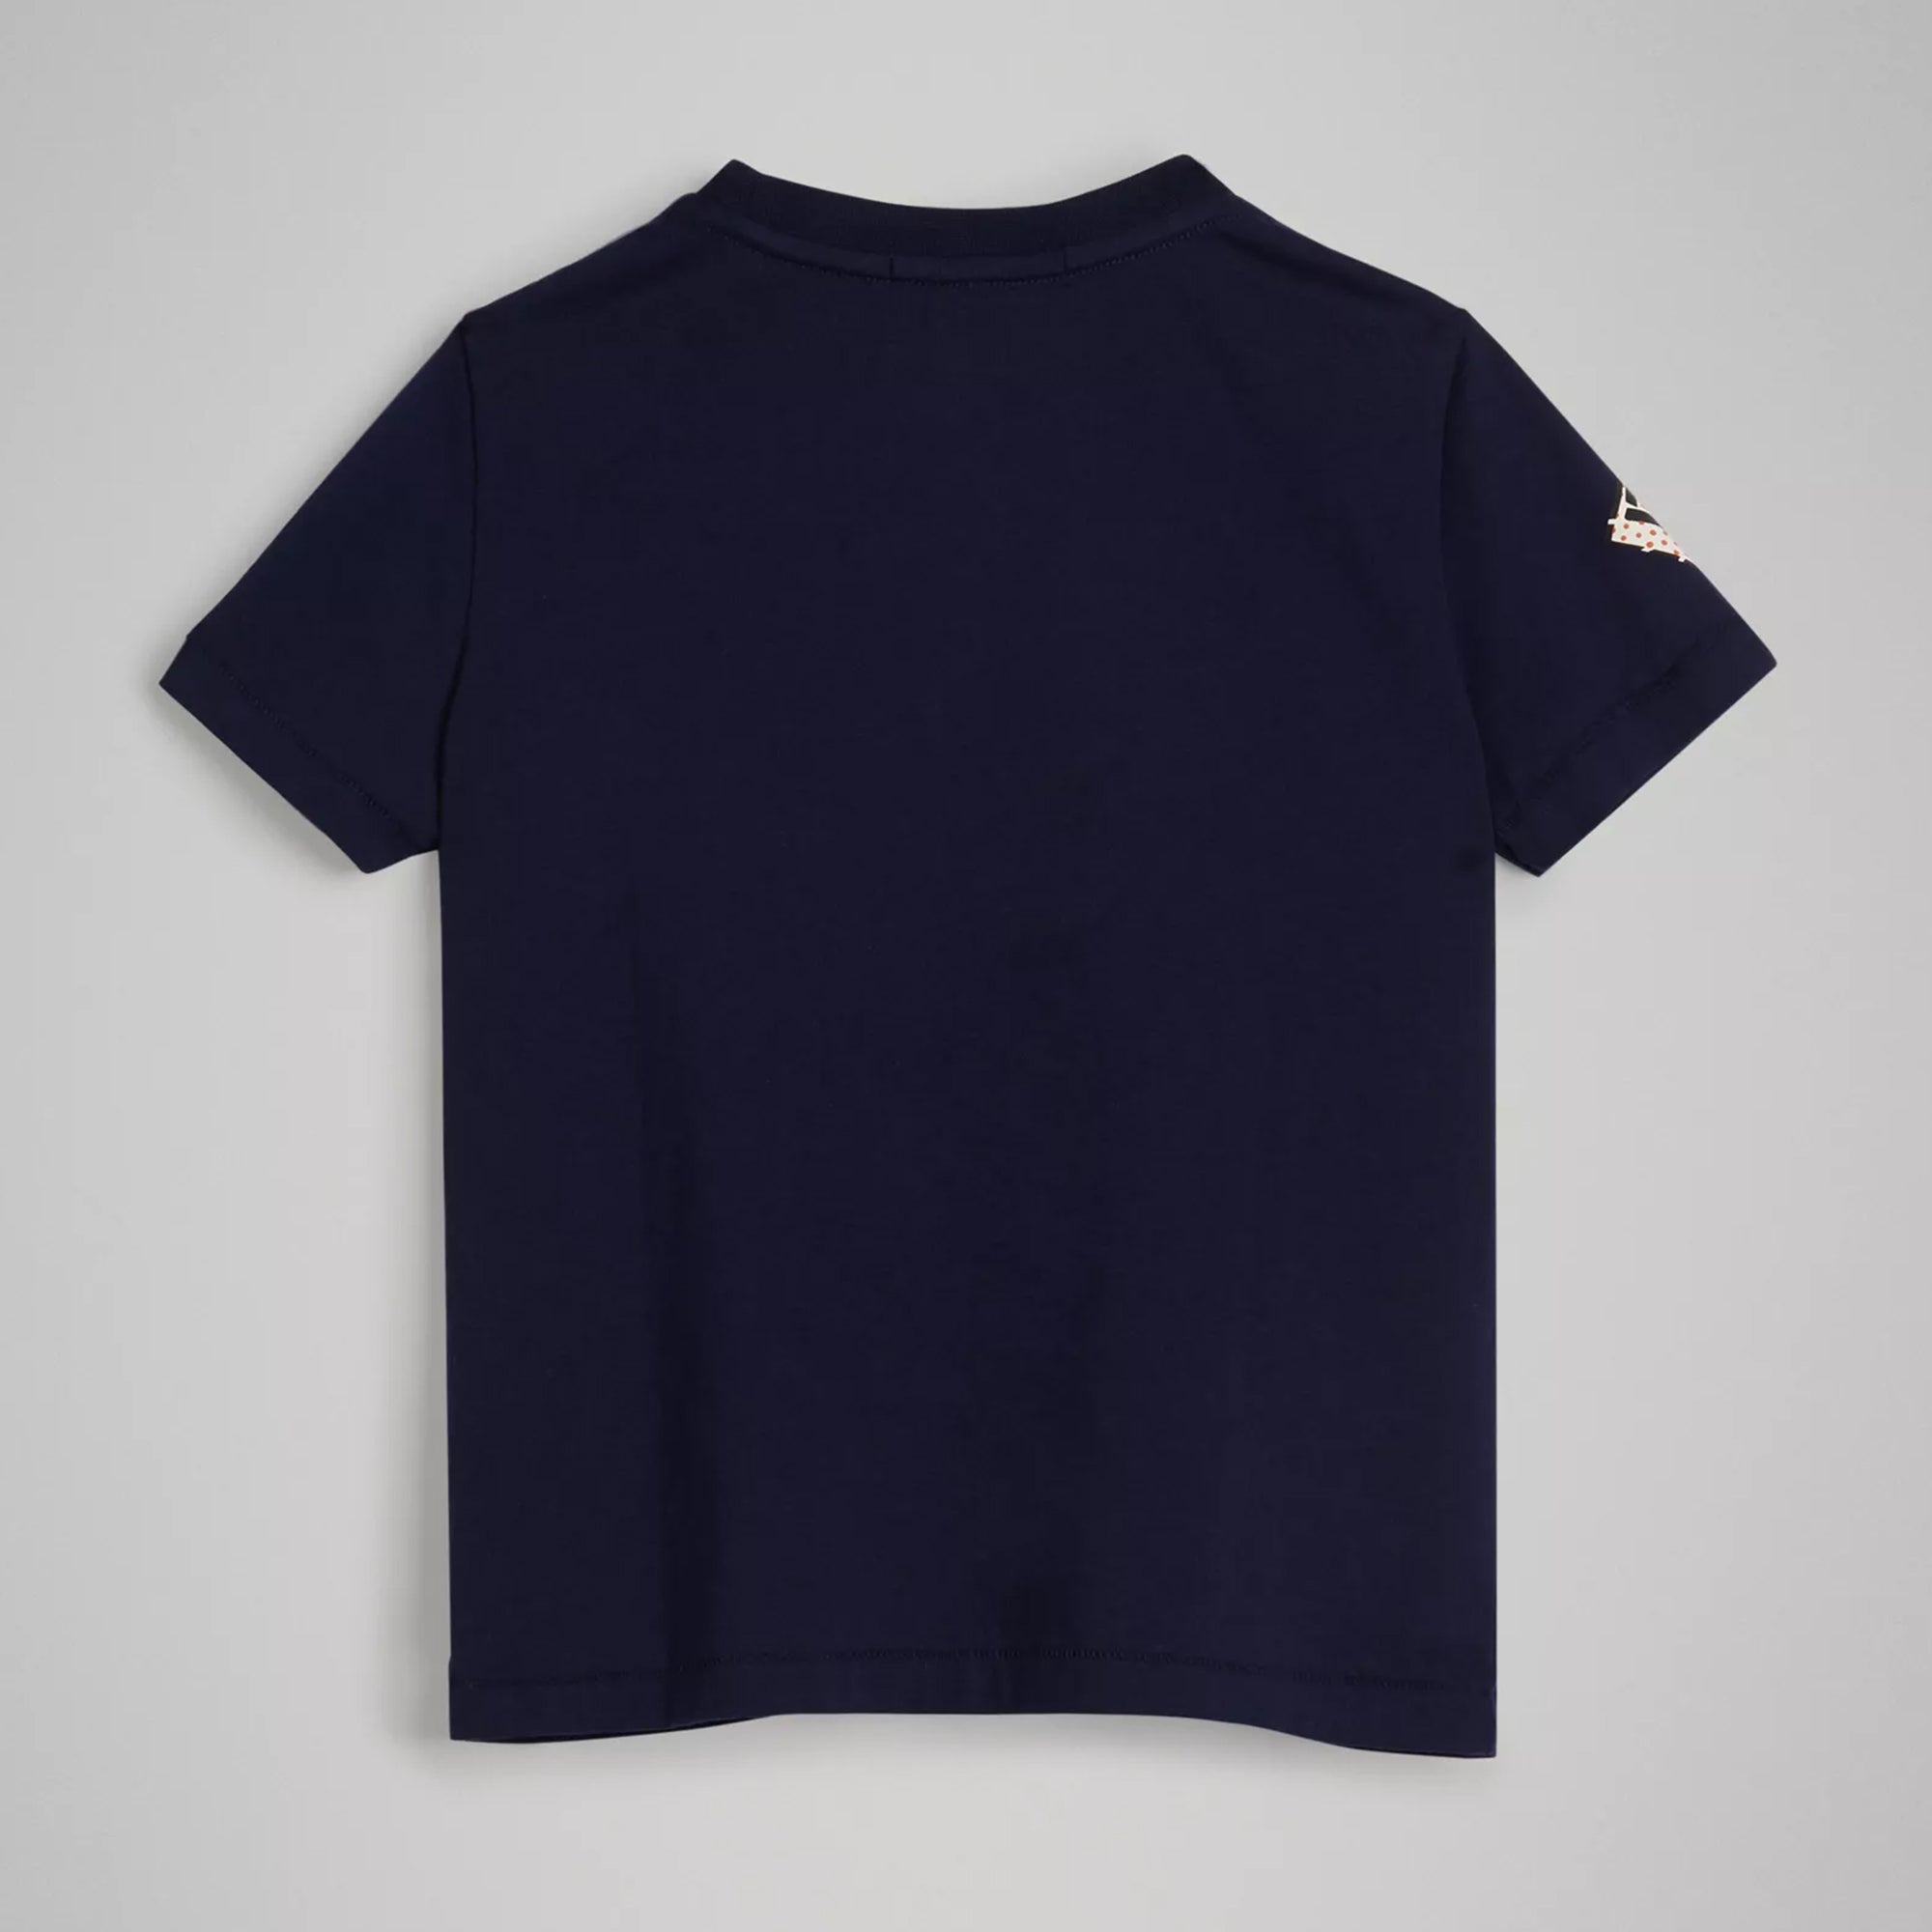 Boys Navy Printed Cotton T-shirt